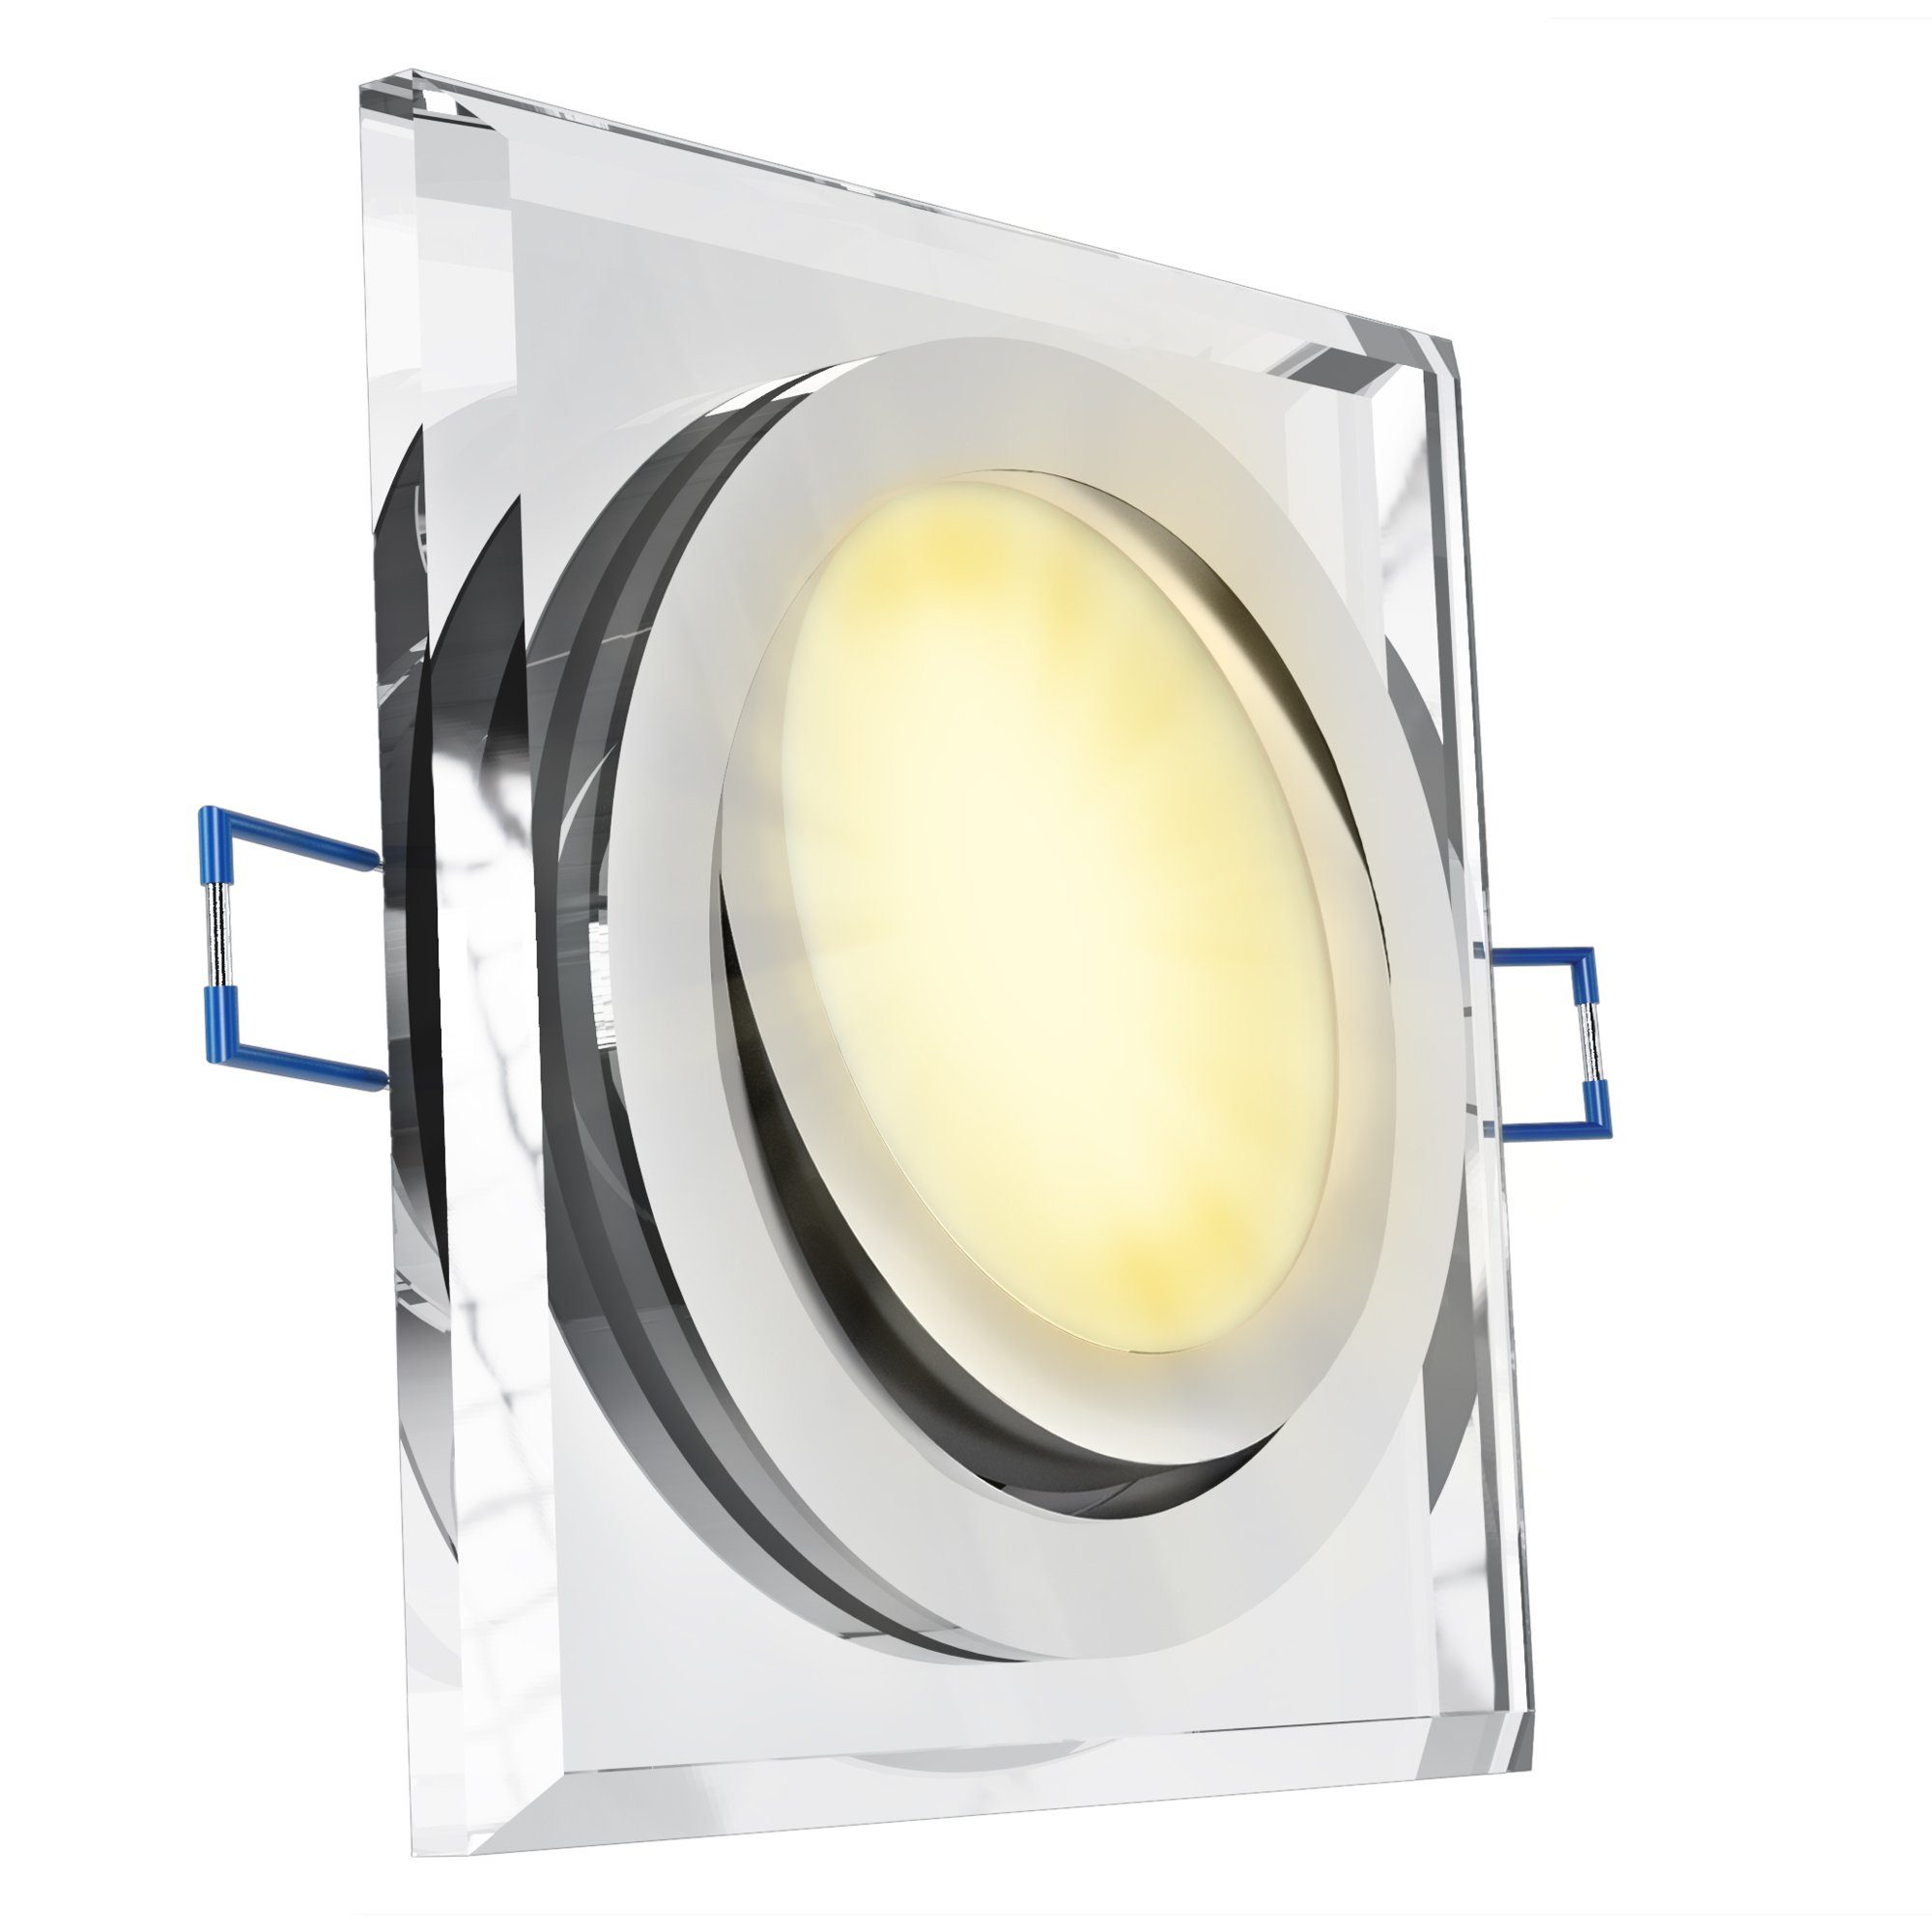 Einbauspot SSC-LUXon Flacher quadratisch schwenkbar 230V, LED LED LED Modul Warmweiß Glas Einbaustrahler mit